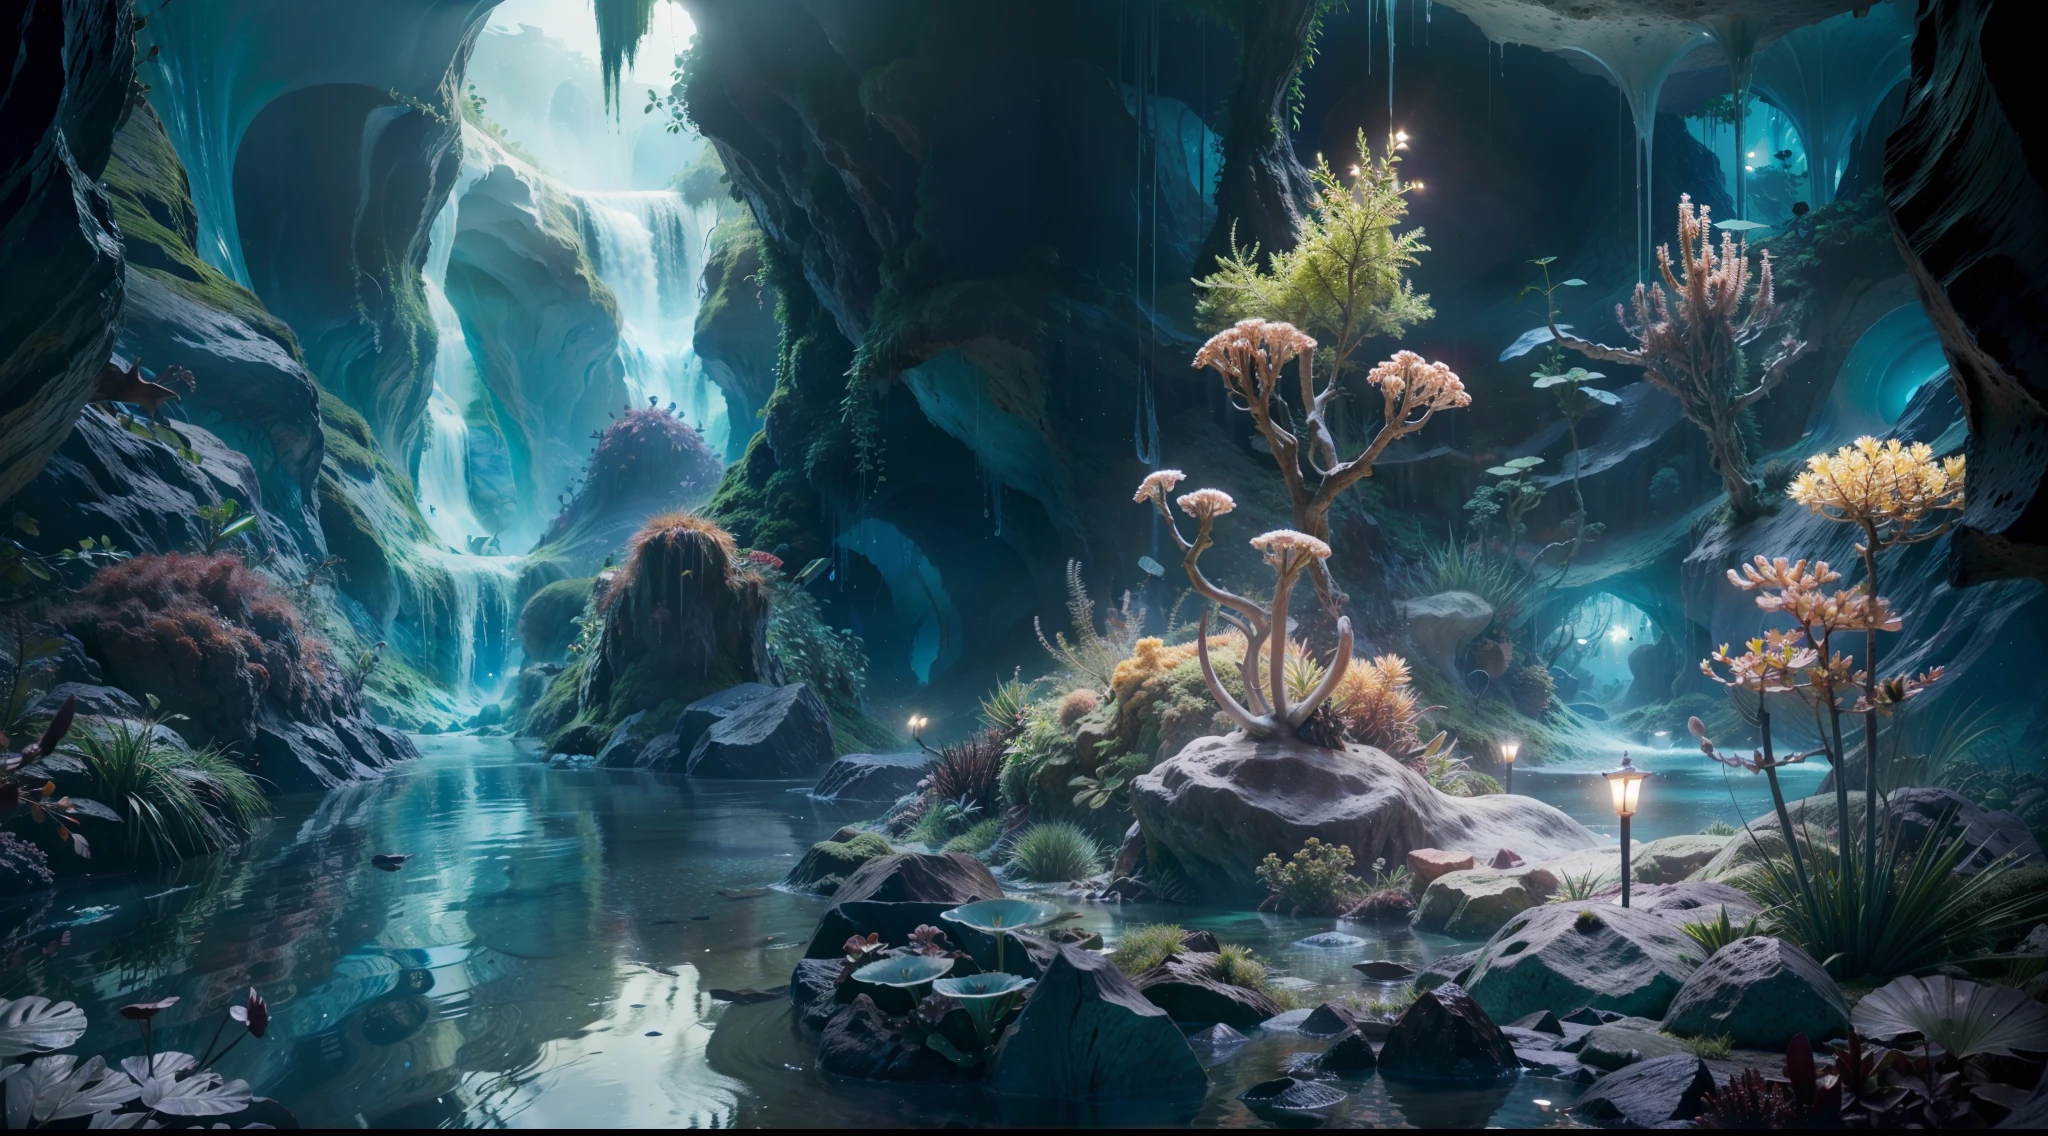 深淵、在一個神祕的水下洞穴裡、你會看到一個令人驚嘆的花園，裡面種滿了閃閃發光的植物。植物很嫩、散發出宜人的光芒、用不同的顏色照亮洞穴的牆壁。走進生物發光的神秘世界、感覺像是步入了夢想成真的神奇境界。全景圖, 高細節, 獲獎的, 最好的品質, 高解析度, 8K